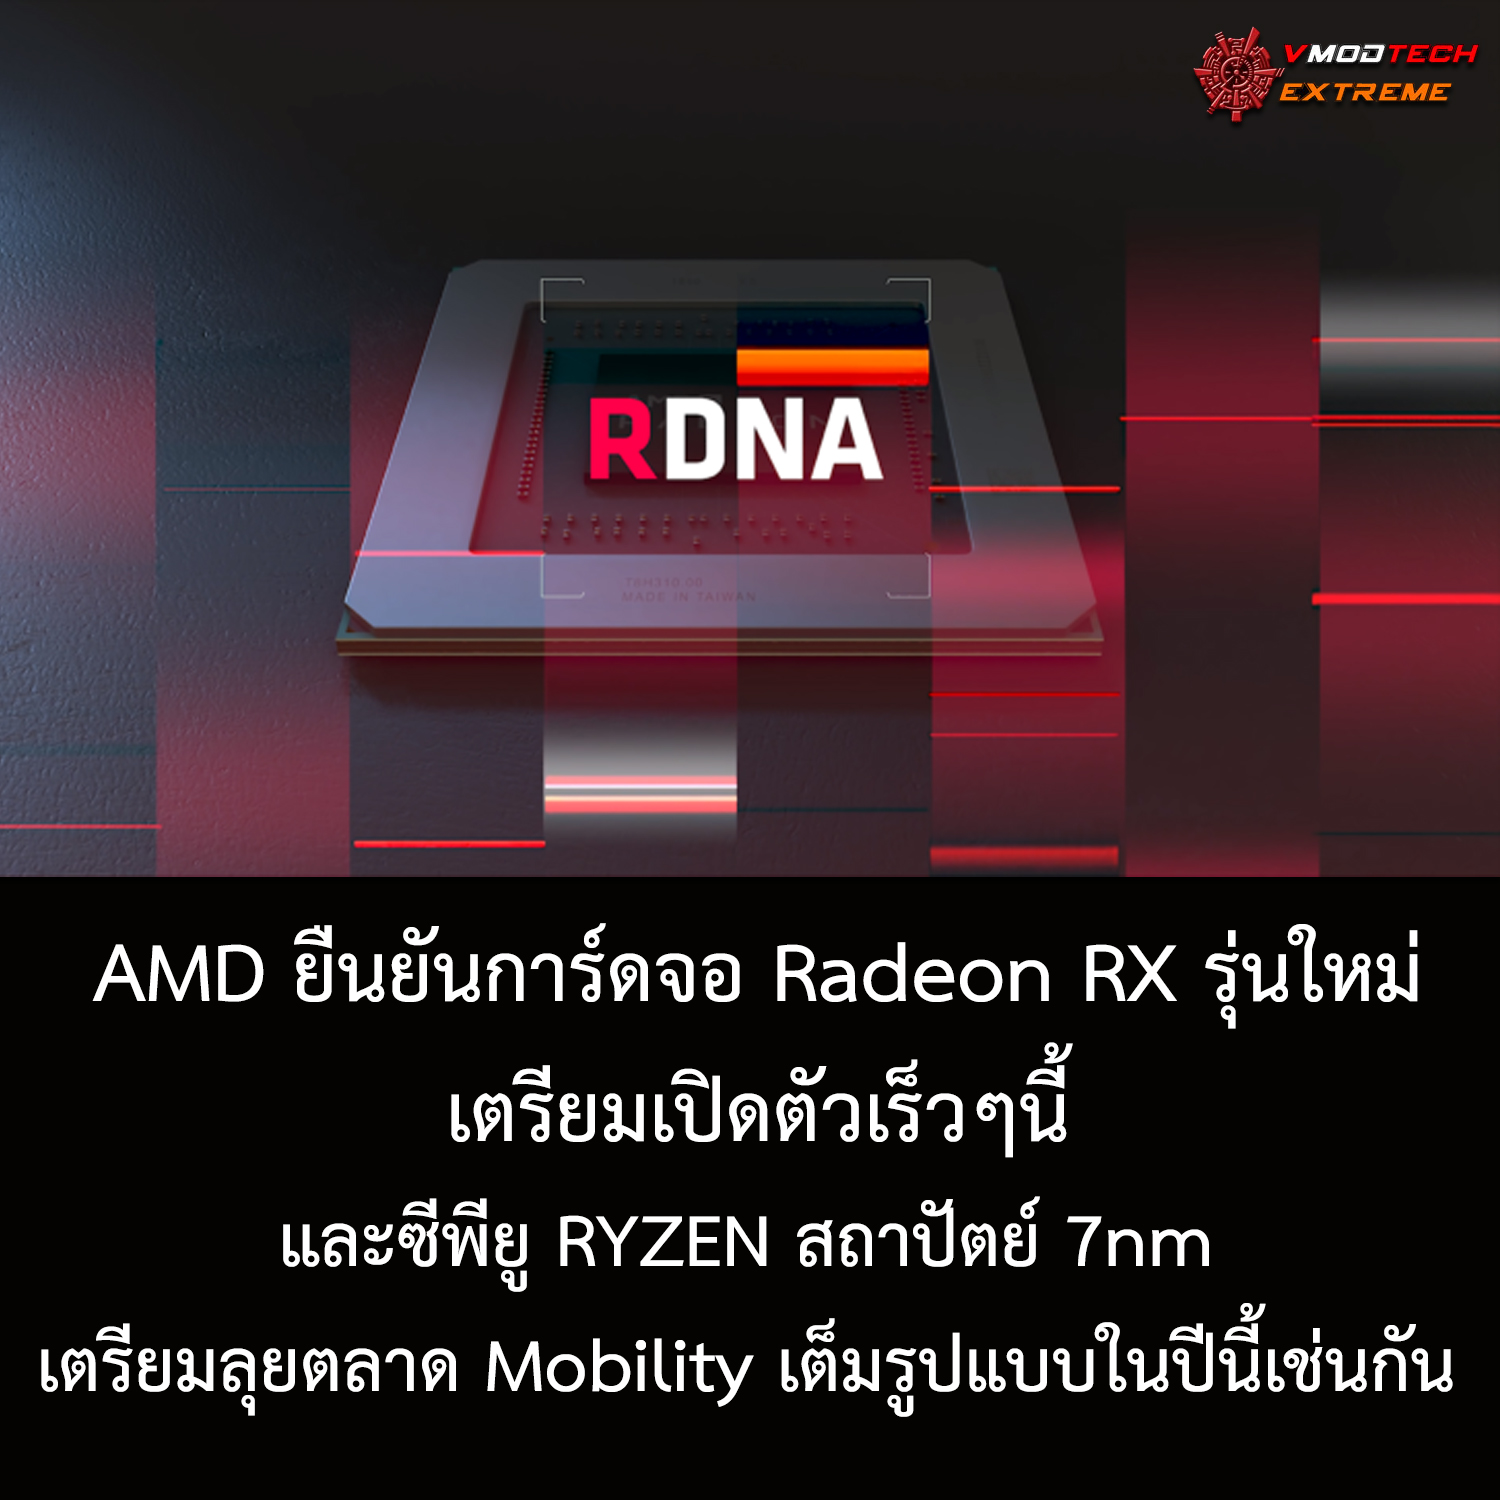 ยังไม่หยุด!! CEO ทางฝั่ง AMD ยืนยันการ์ดจอ Radeon RX รุ่นใหม่ระดับ Hi-End เตรียมเปิดตัวเร็วๆนี้และซีพียู RYZEN สถาปัตย์ 7nm เตรียมลุยตลาด Mobility เต็มรูปแบบในปีนี้เช่นกัน 